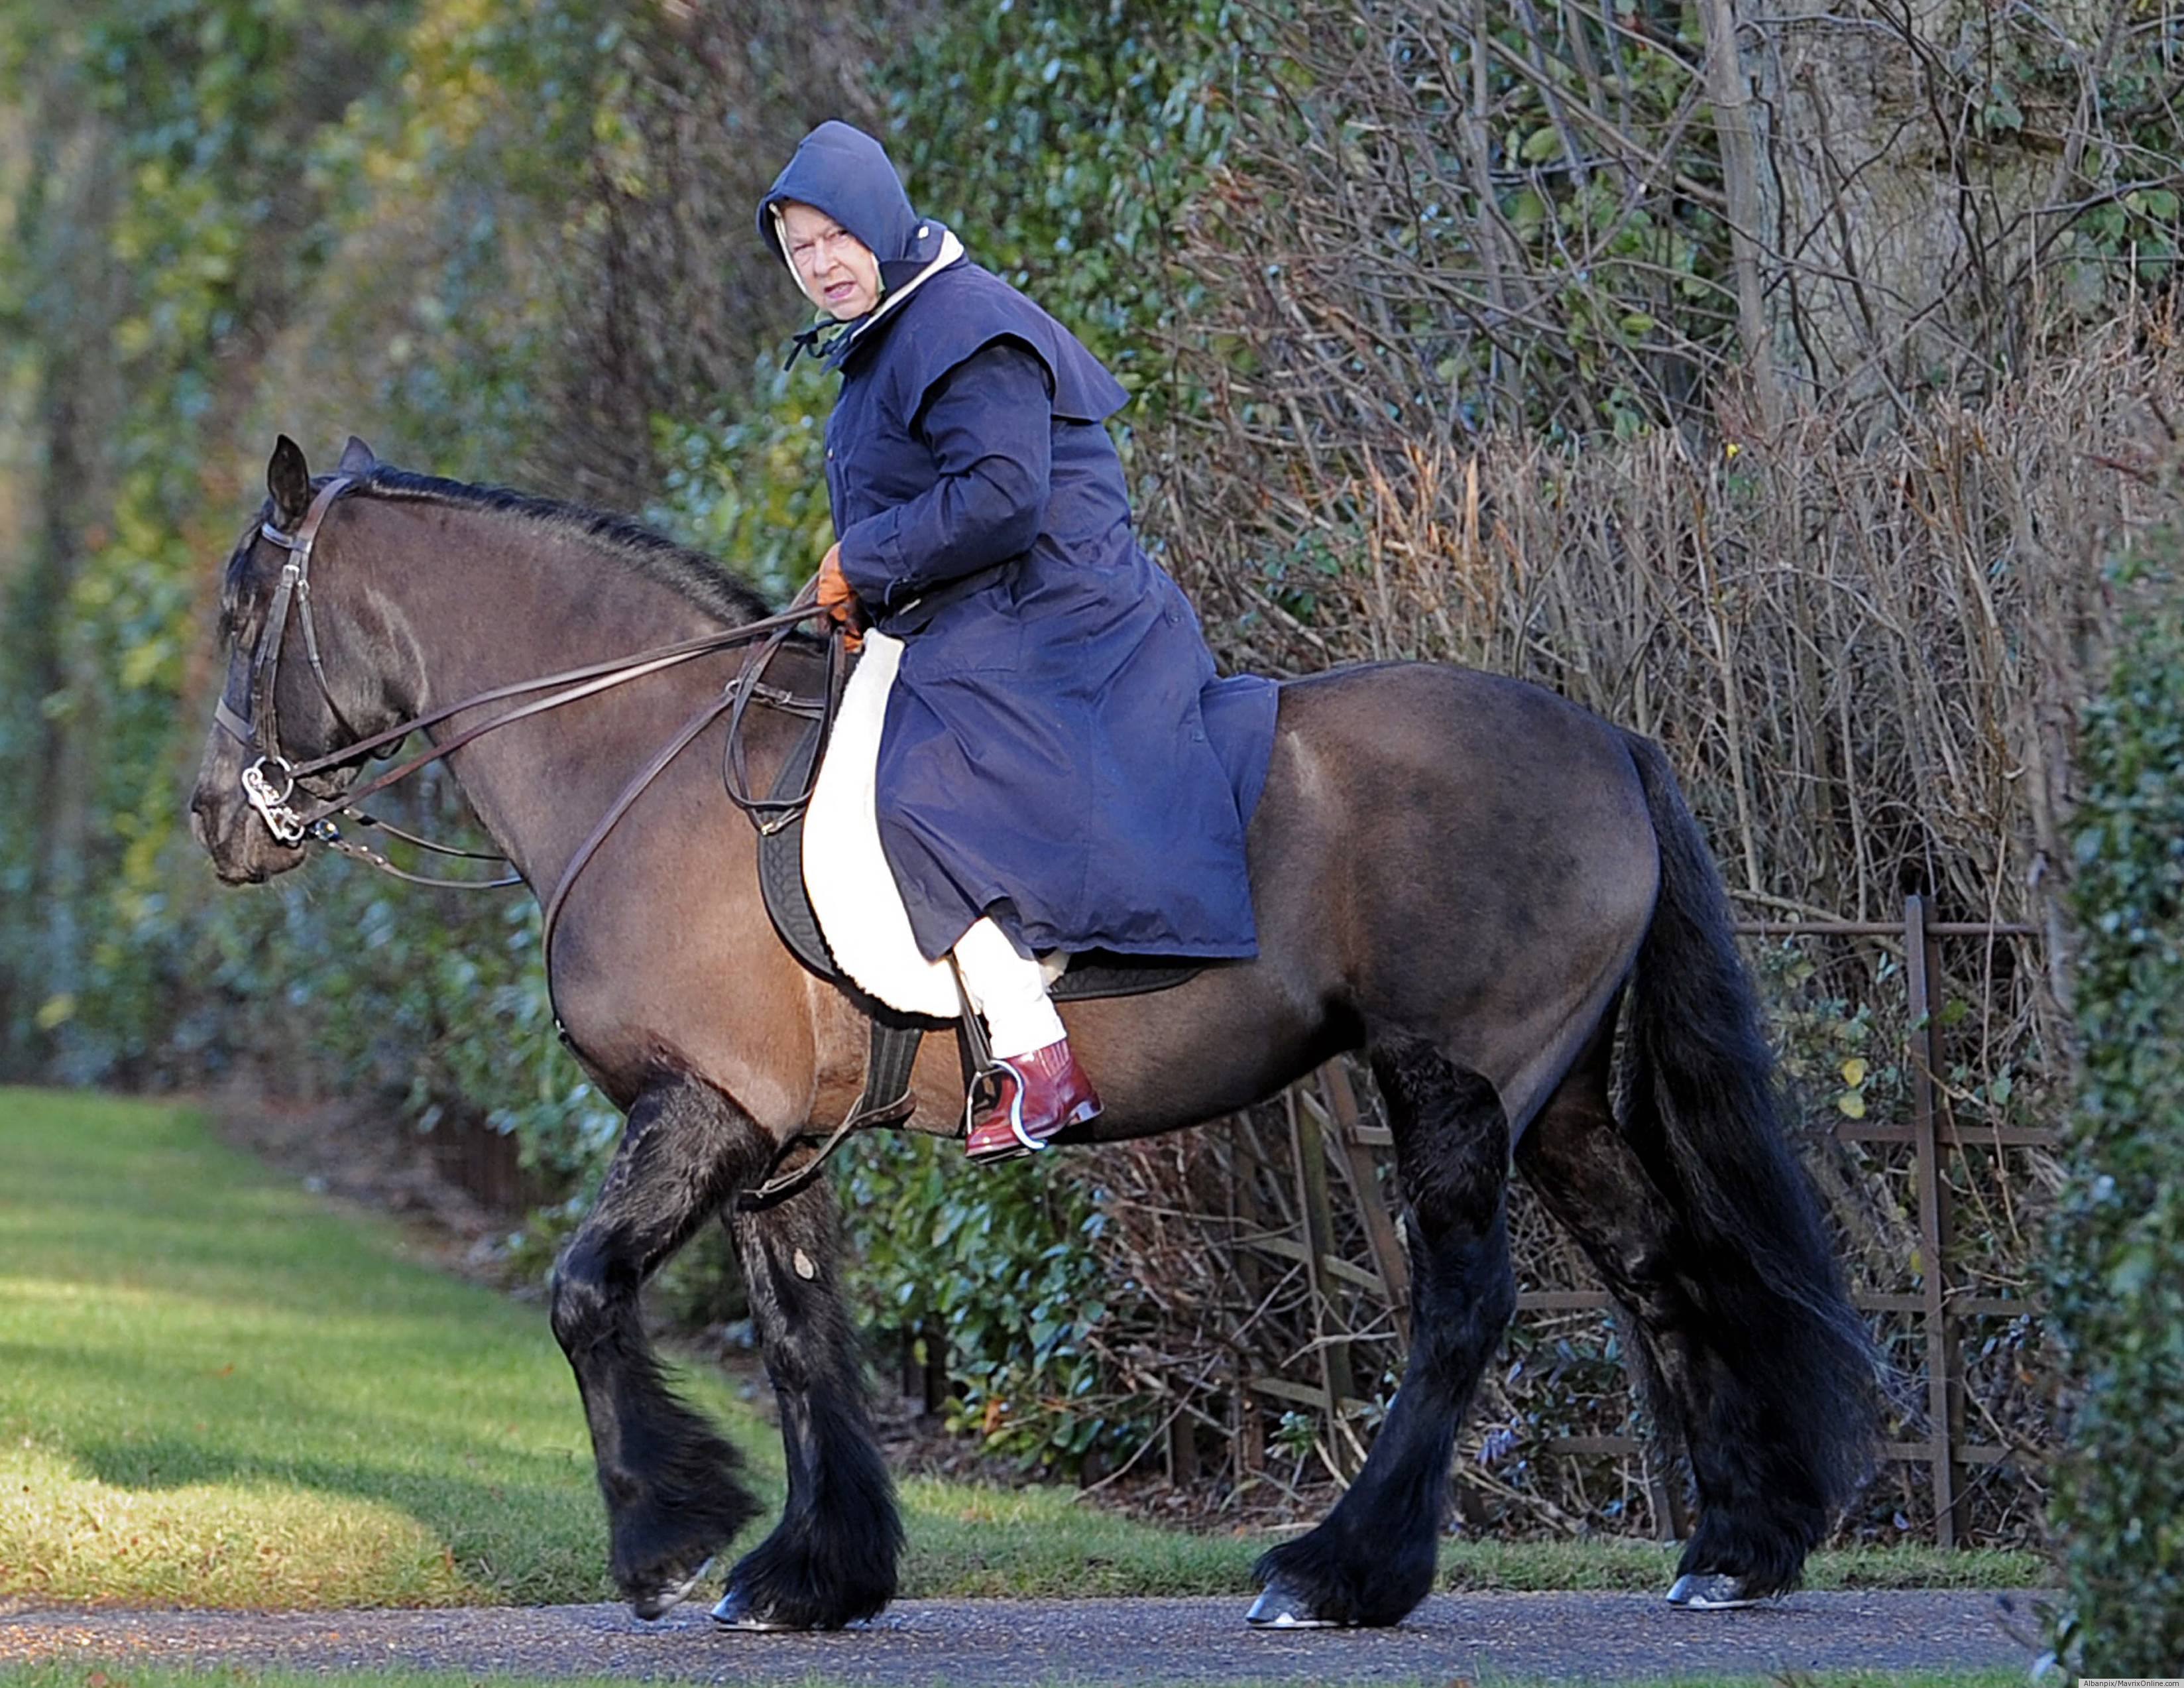 Rainha Elizabeth do Reino Unido, veste uma capa azul com capuz e faz sua montaria, nos campos ingleses, um enorme cavalo castanho escuro da raça percheron,